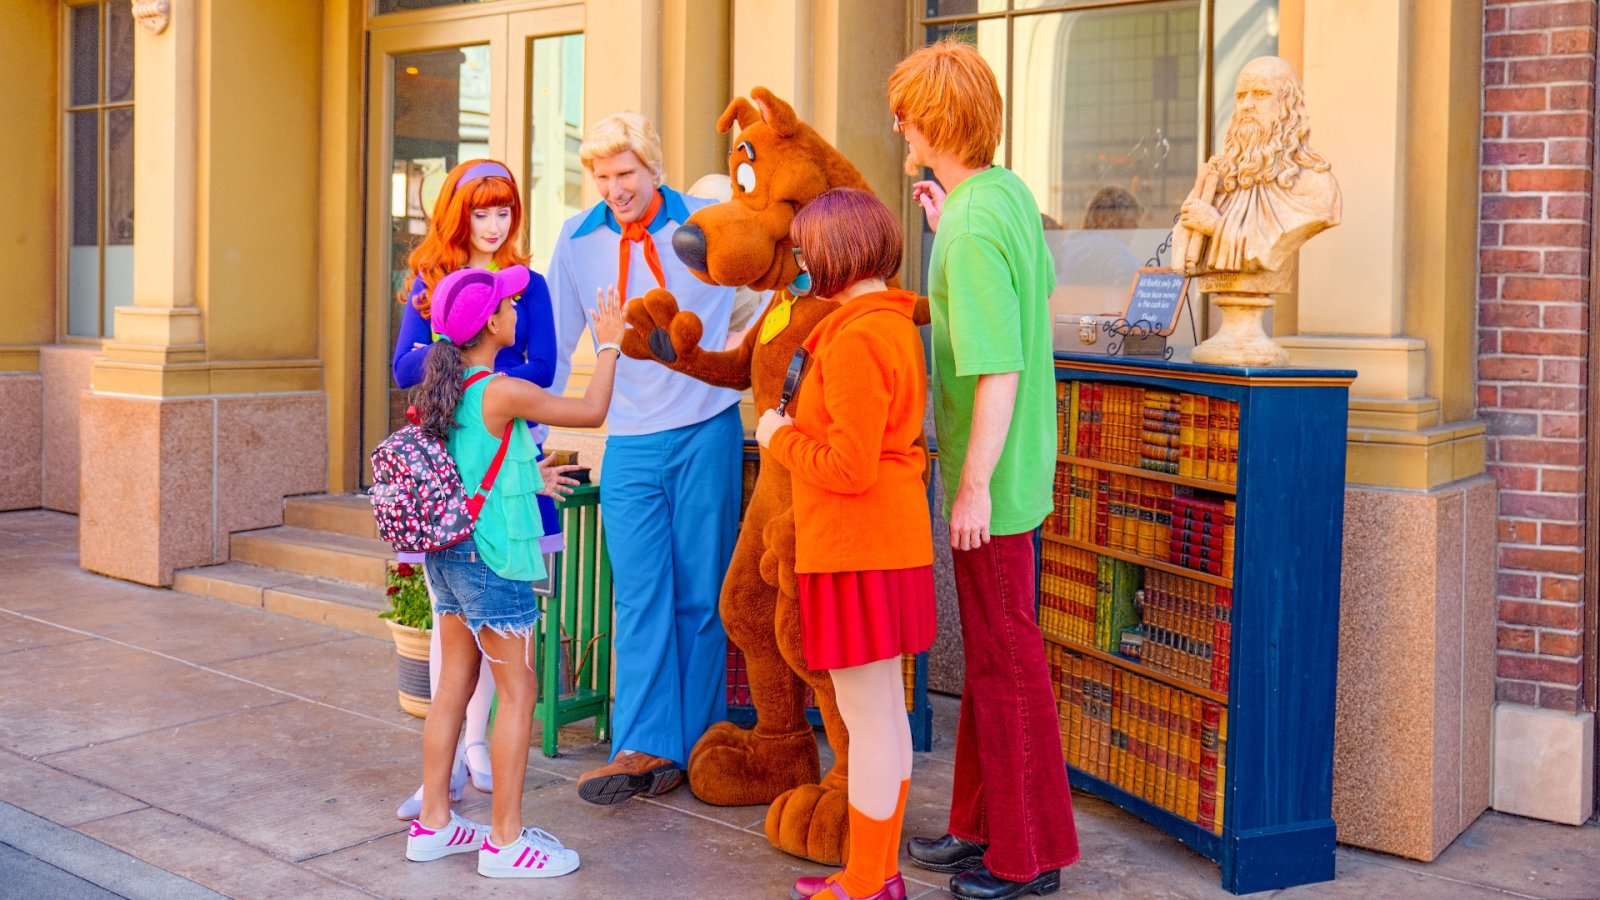 Cel mai recent show de la HBO care atinge lumea Scooby-Doo i-a făcut pe spectatori să vorbească - dar de ce?